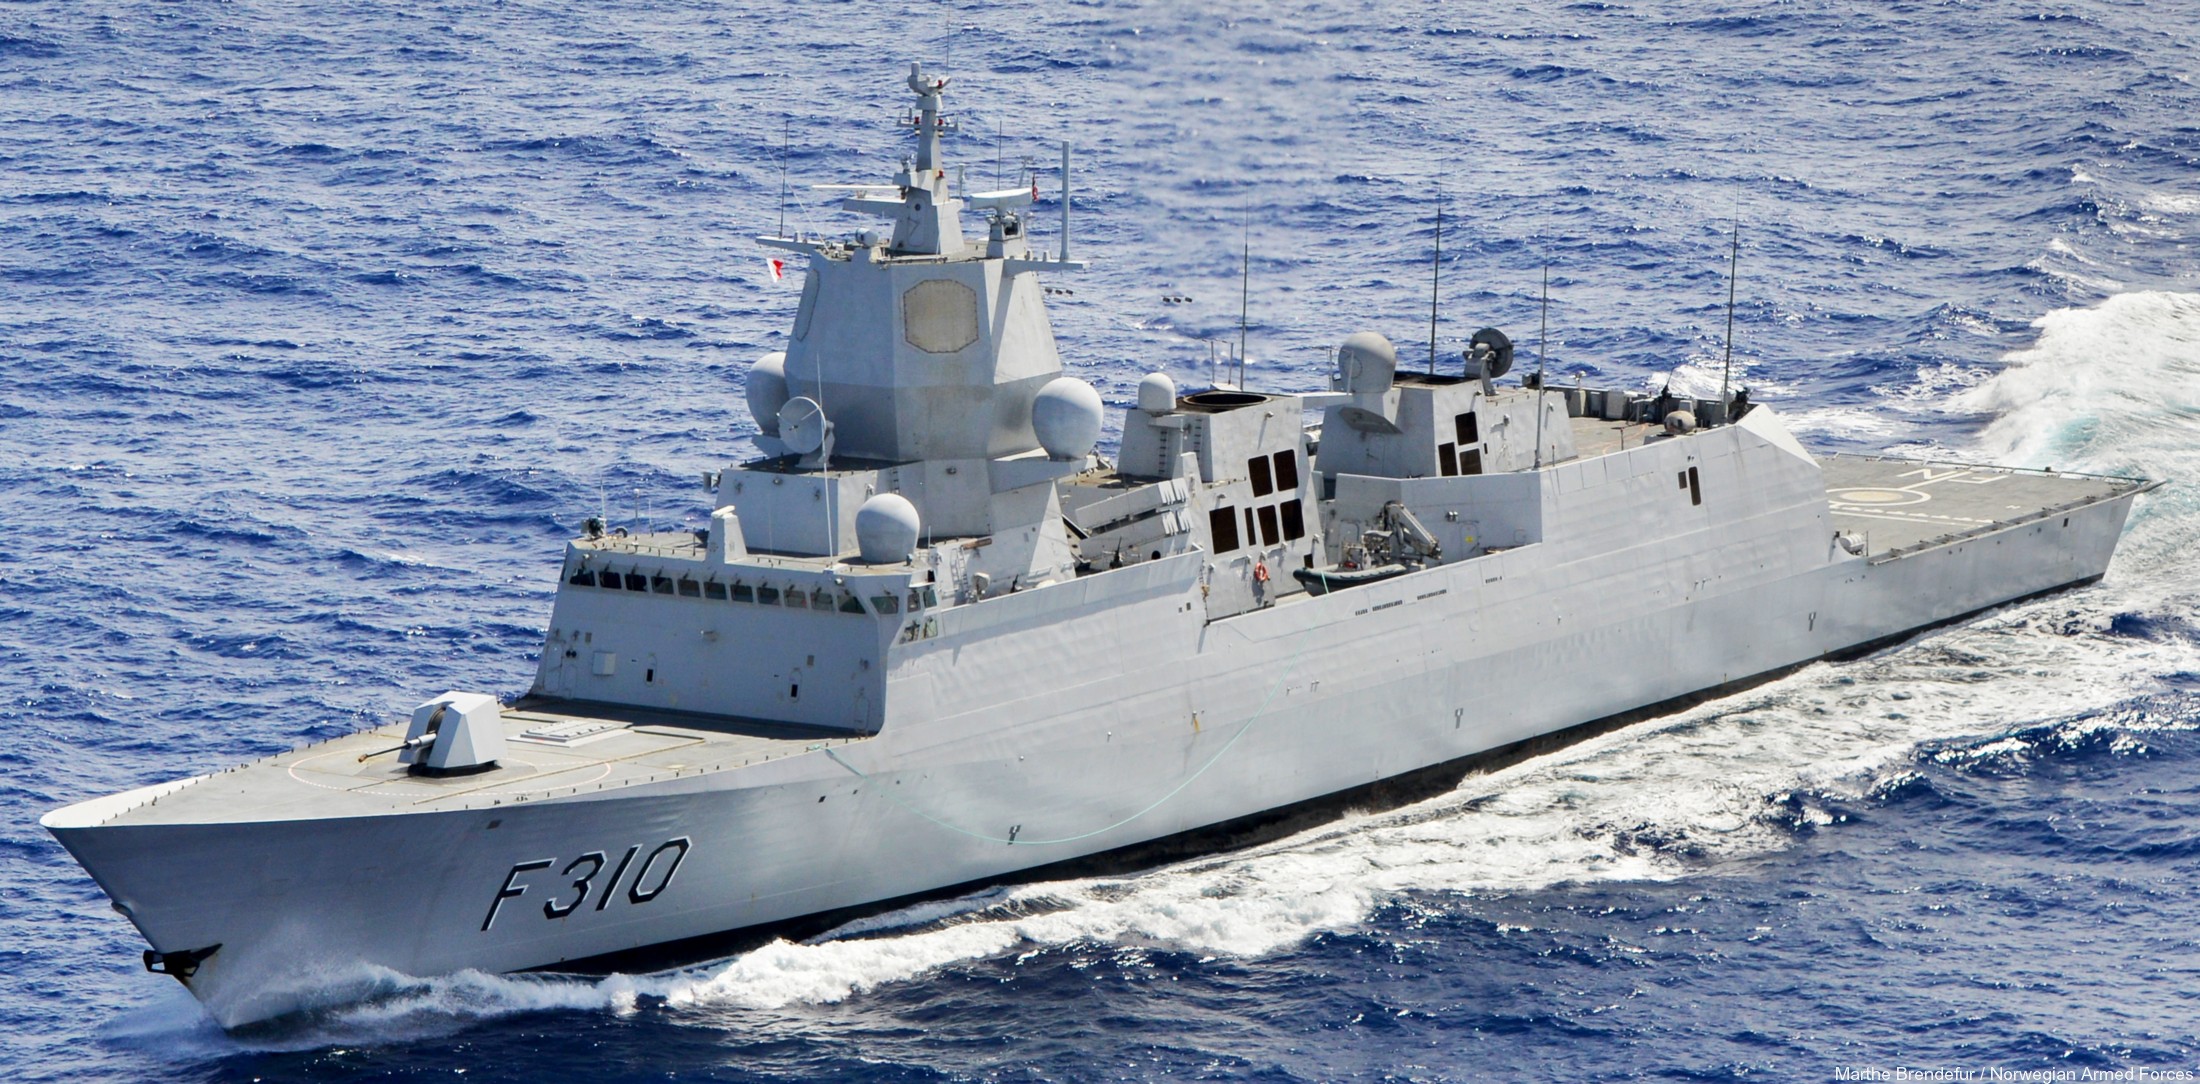 f-310 hnoms knm fridtjof nansen frigate royal norwegian navy sjoforsvaret bazan navantia ferrol